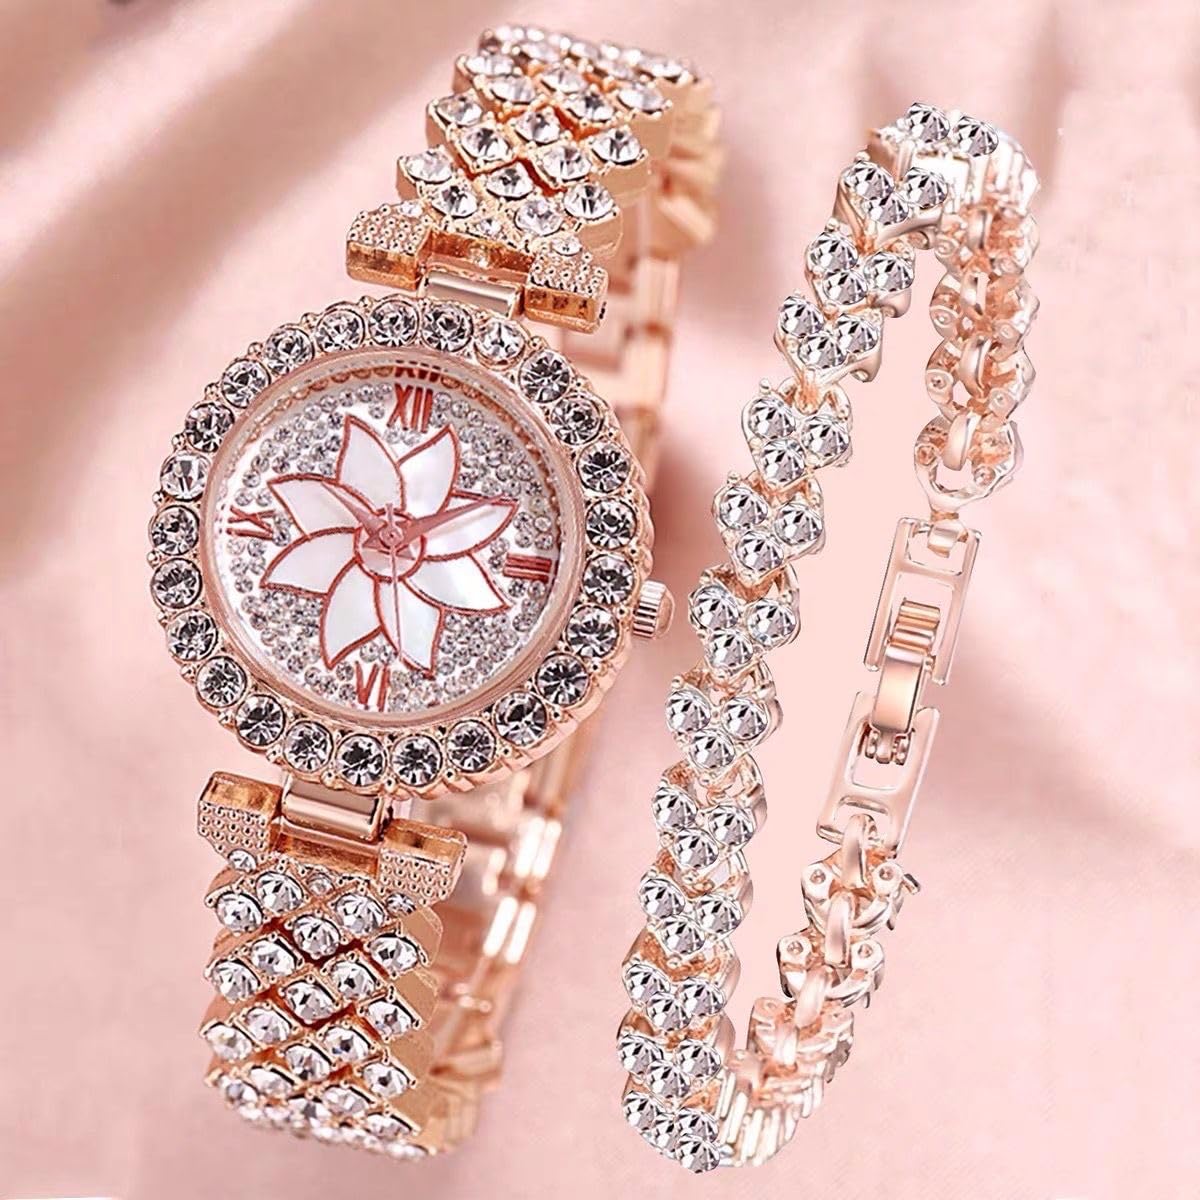 Elegant Watch and Crystal Bangle Bracelet Set for Women